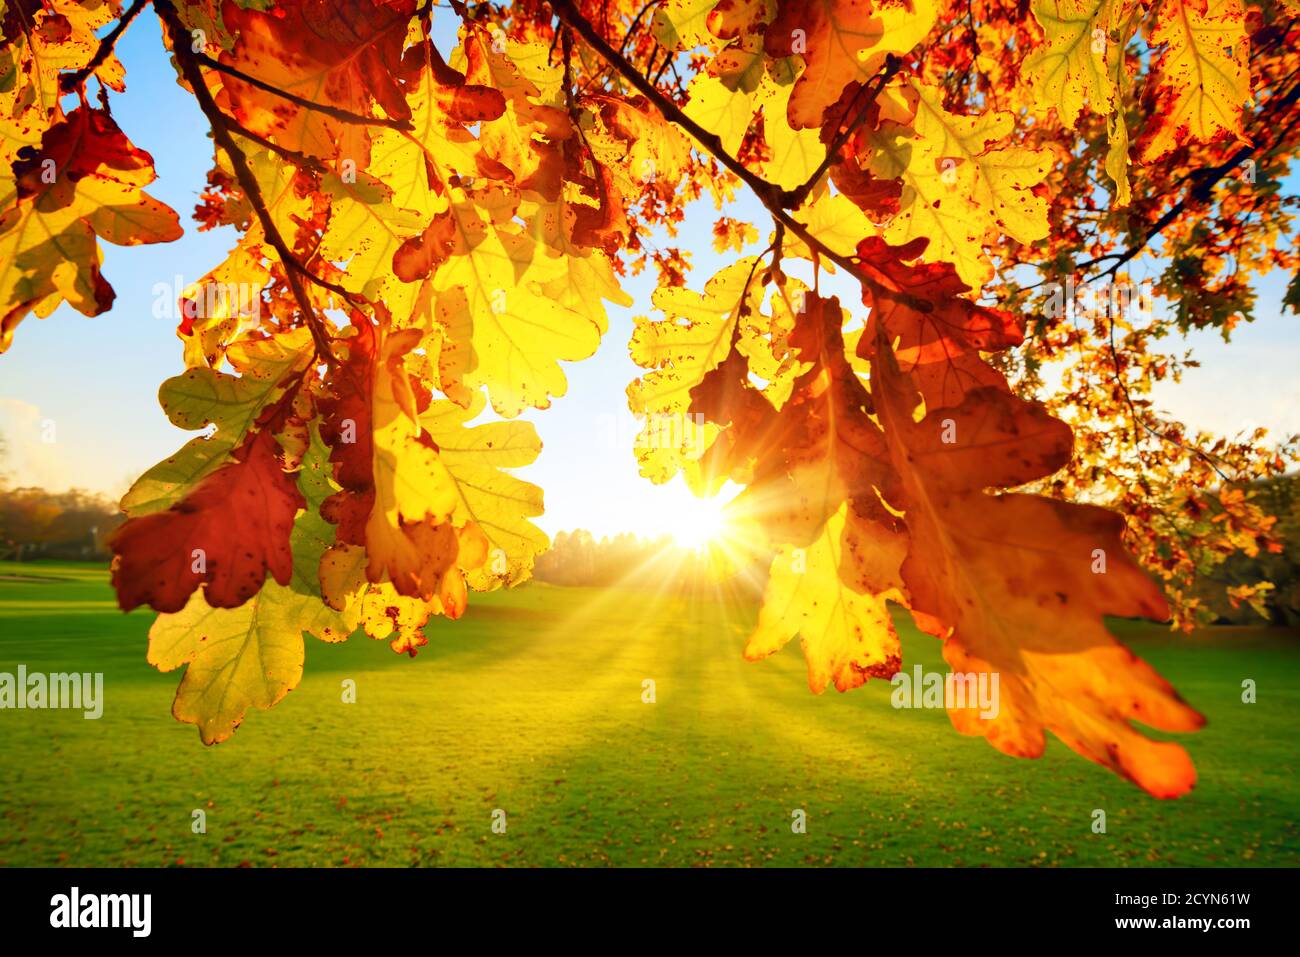 Paisaje natural en un parque: El sol de otoño iluminando hojas de roble amarillo en un prado verde Foto de stock